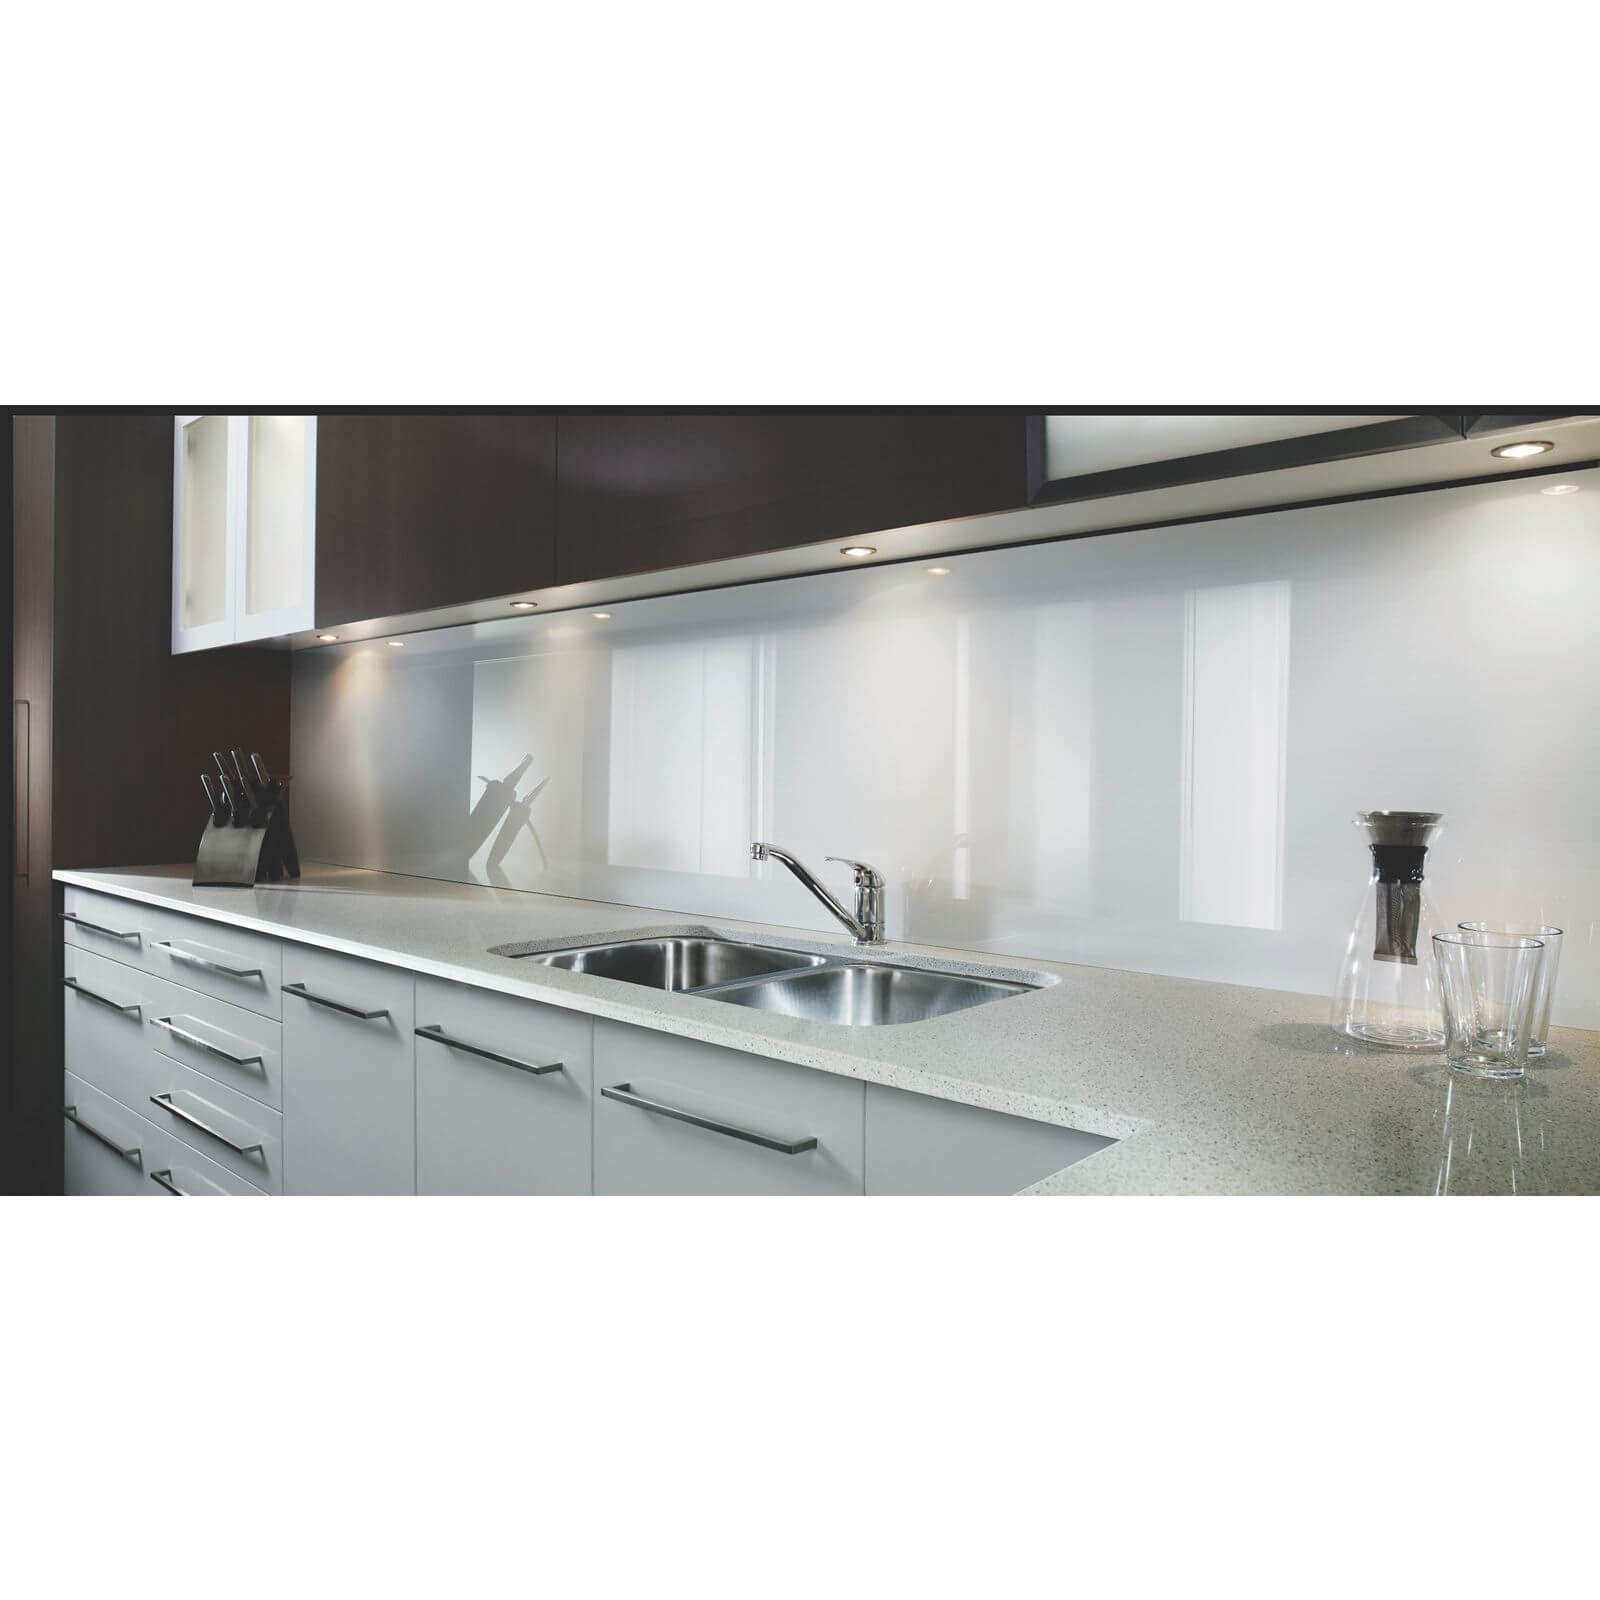 Zenolite Acrylic Kitchen Splashback Panel - 760 x 700mm - White